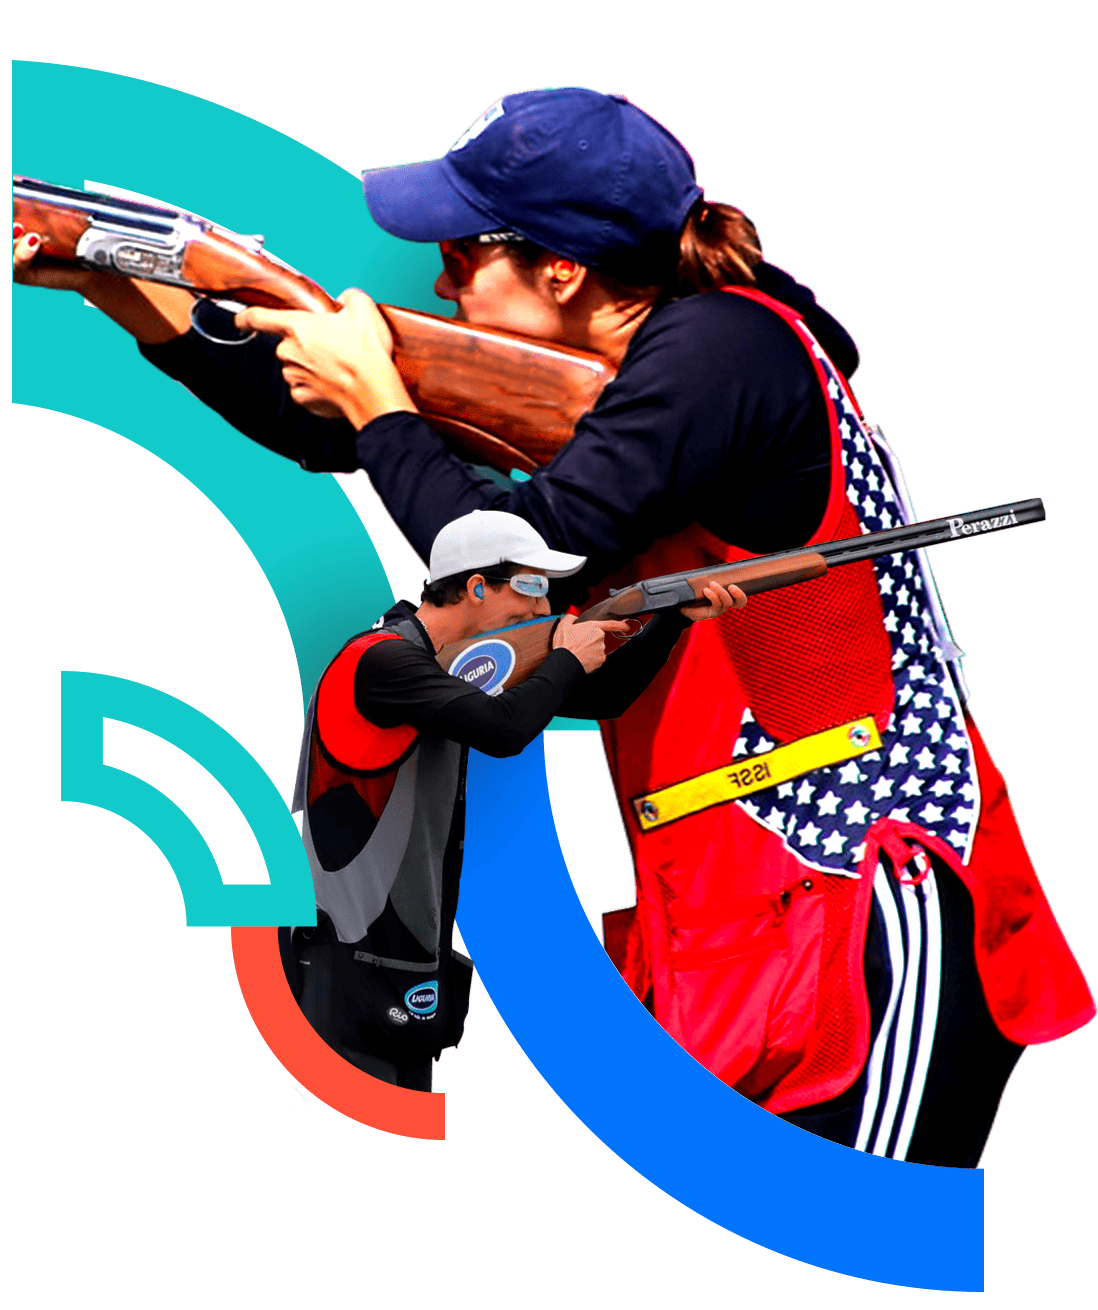 En la foto una atleta y un atleta a punto de disparar sosteniendo su escopeta.